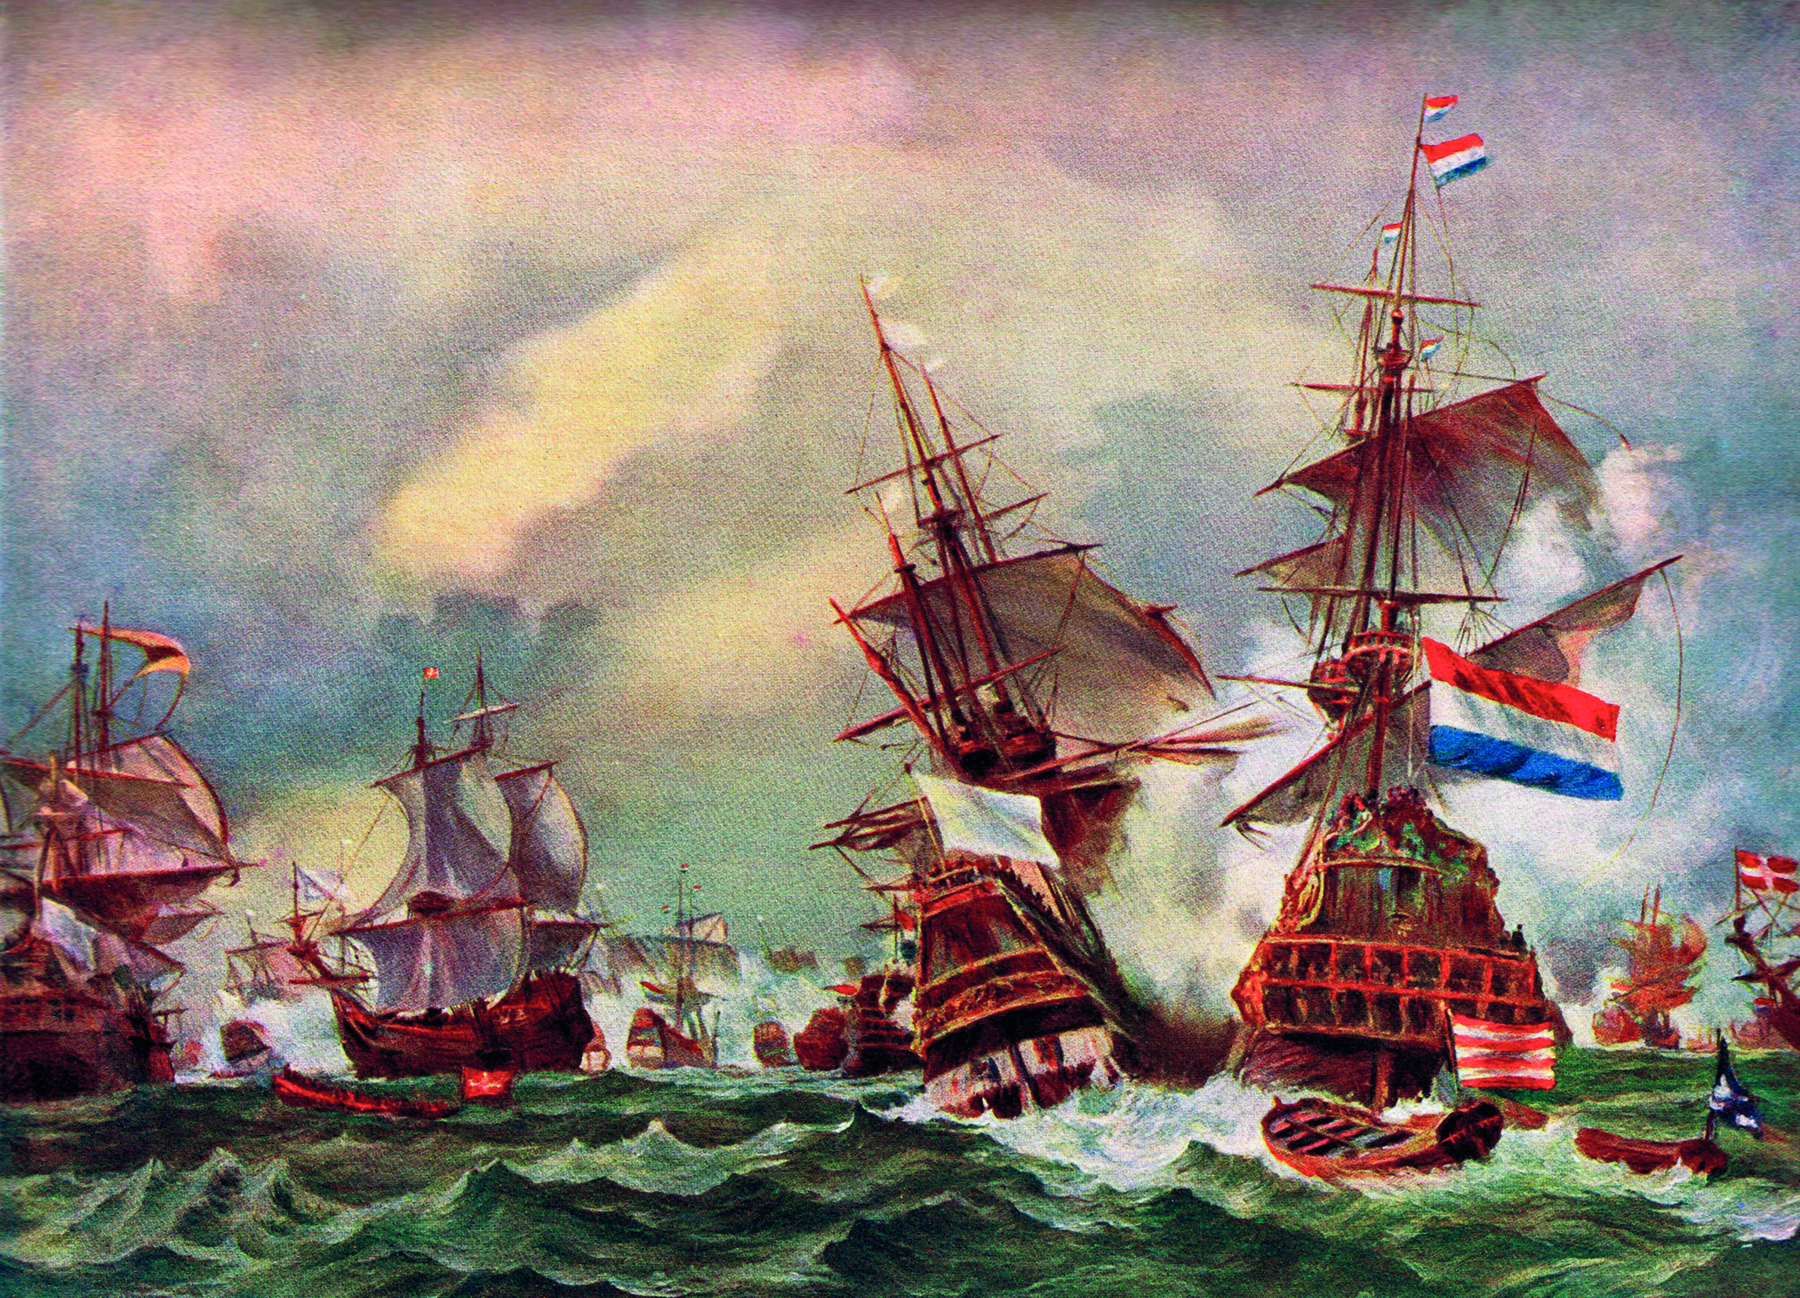 Pintura. Grandes navios no mar agitado, com ondas. Um deles carrega bandeiras da Holanda. No canto direito, pequenos barcos vazios boiando.